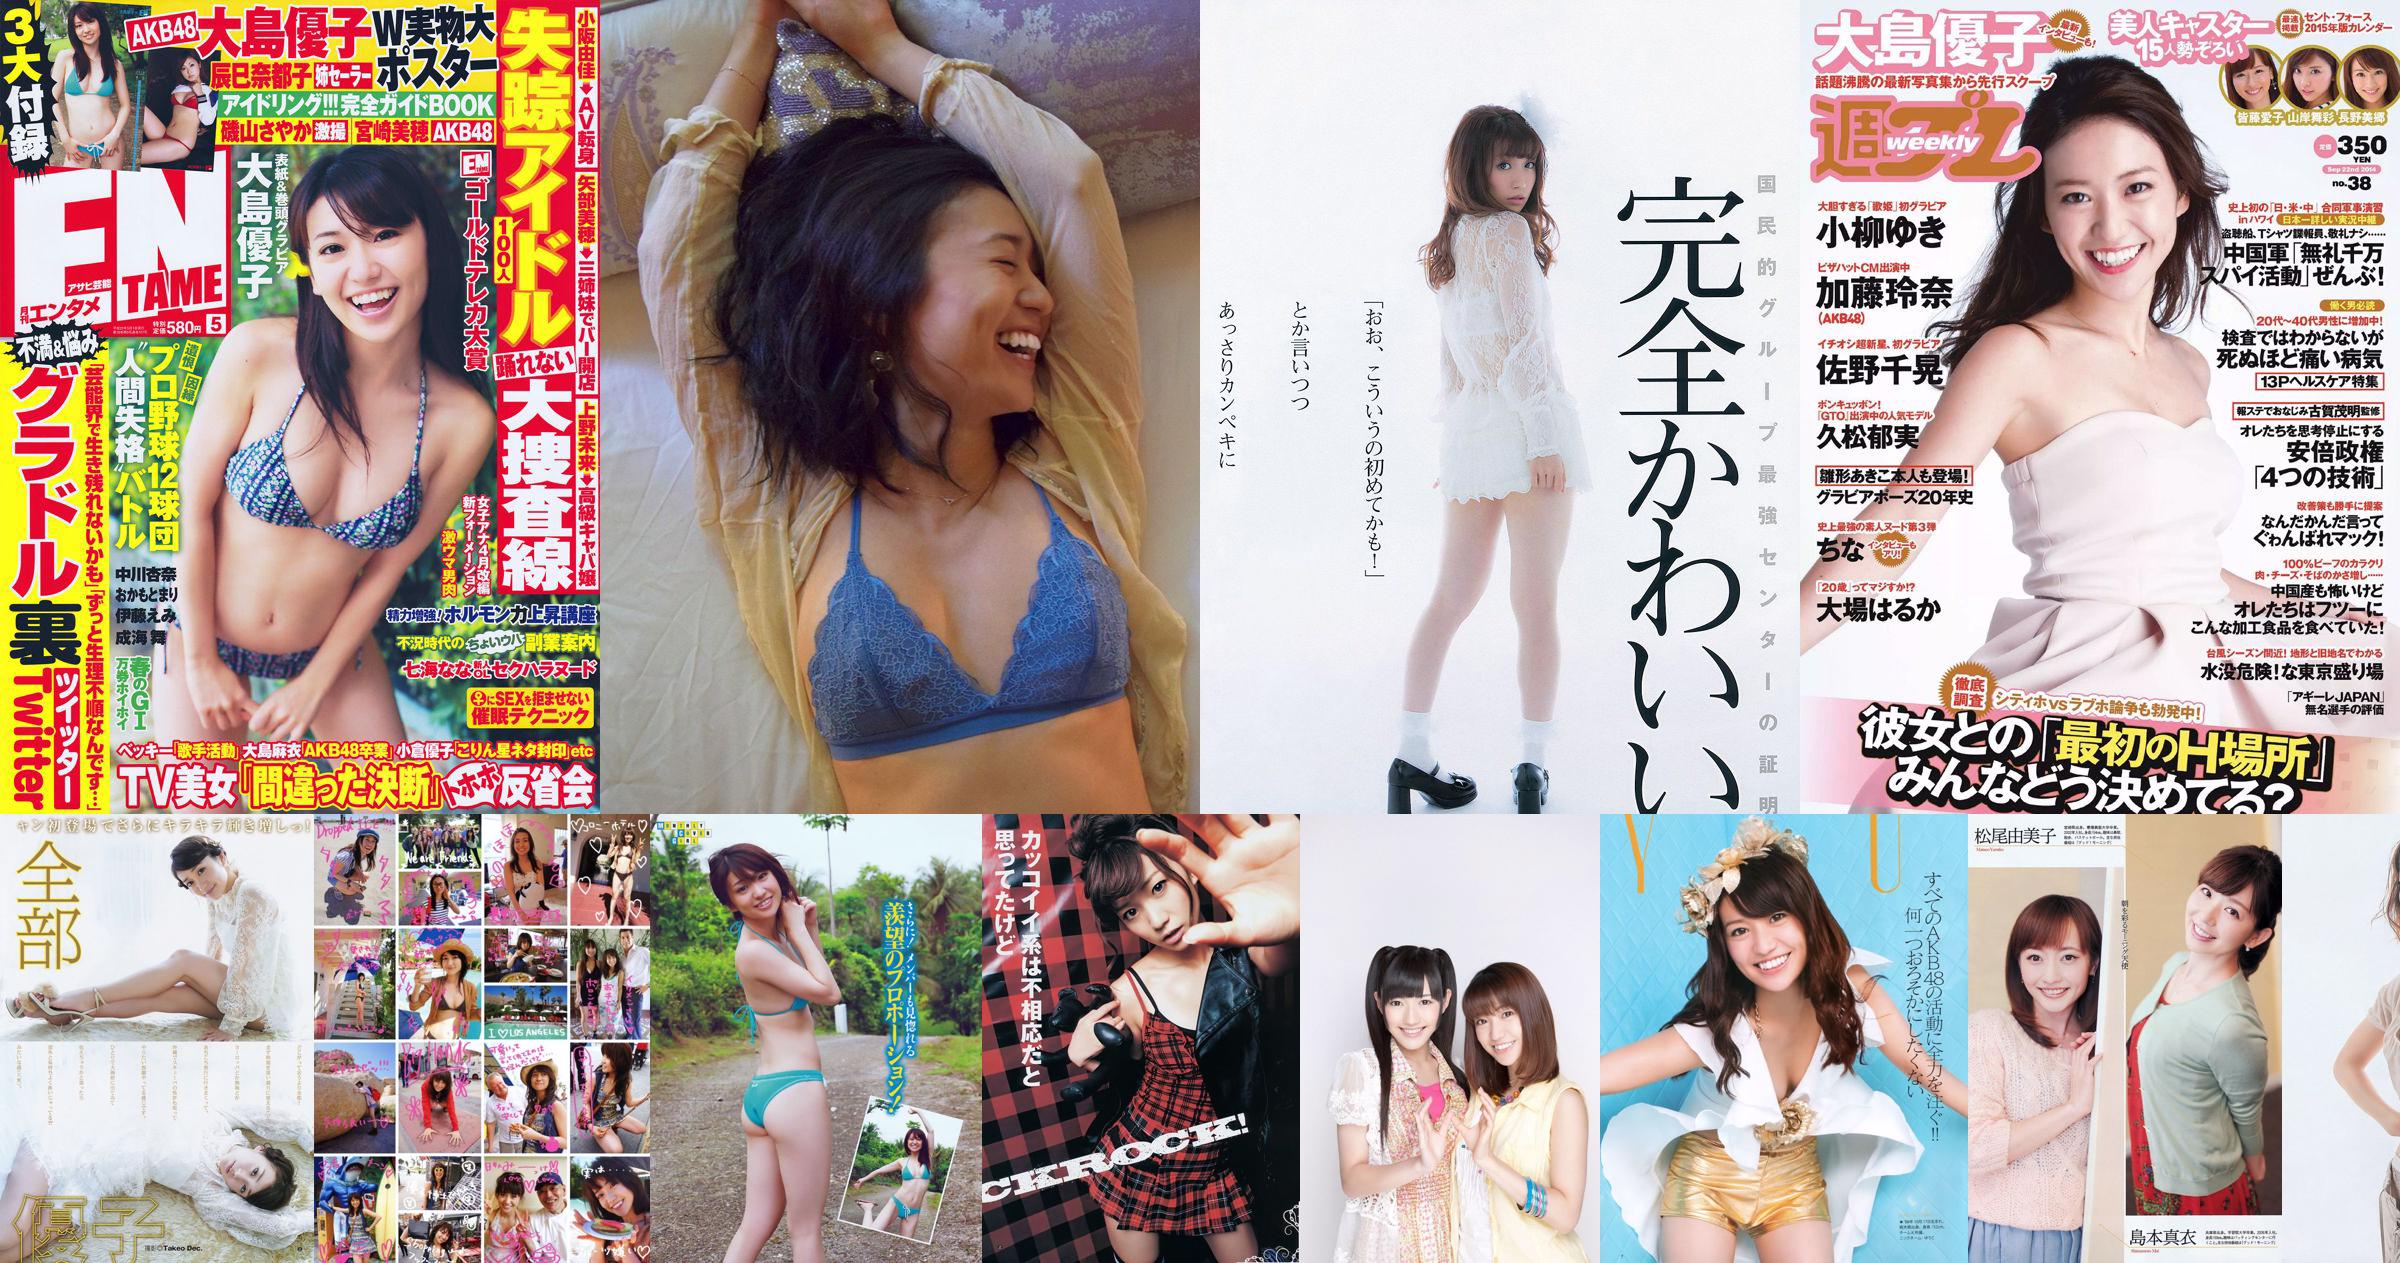 Yuko Oshima Mari Yamachi Mio Otani Rina Koike Mai Kamuro Aiko Eguchi [Weekly Playboy] 2014 No.10 Photographie No.677457 Page 1